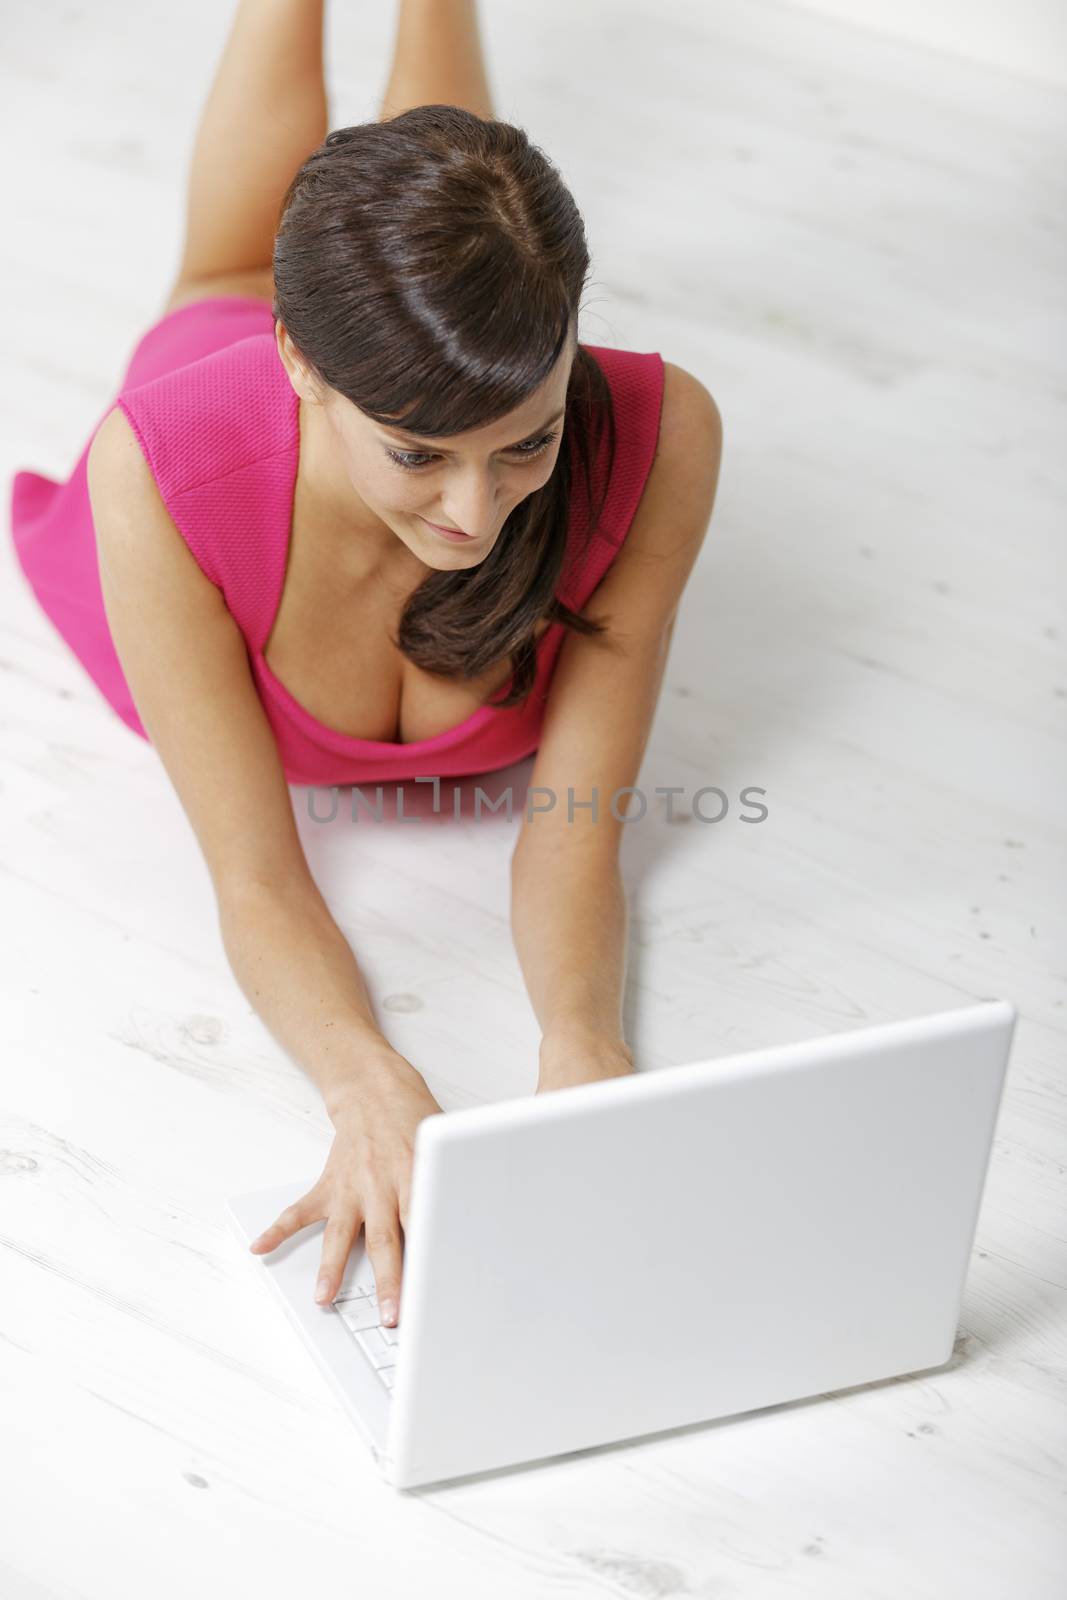 Woman using laptop by studiofi